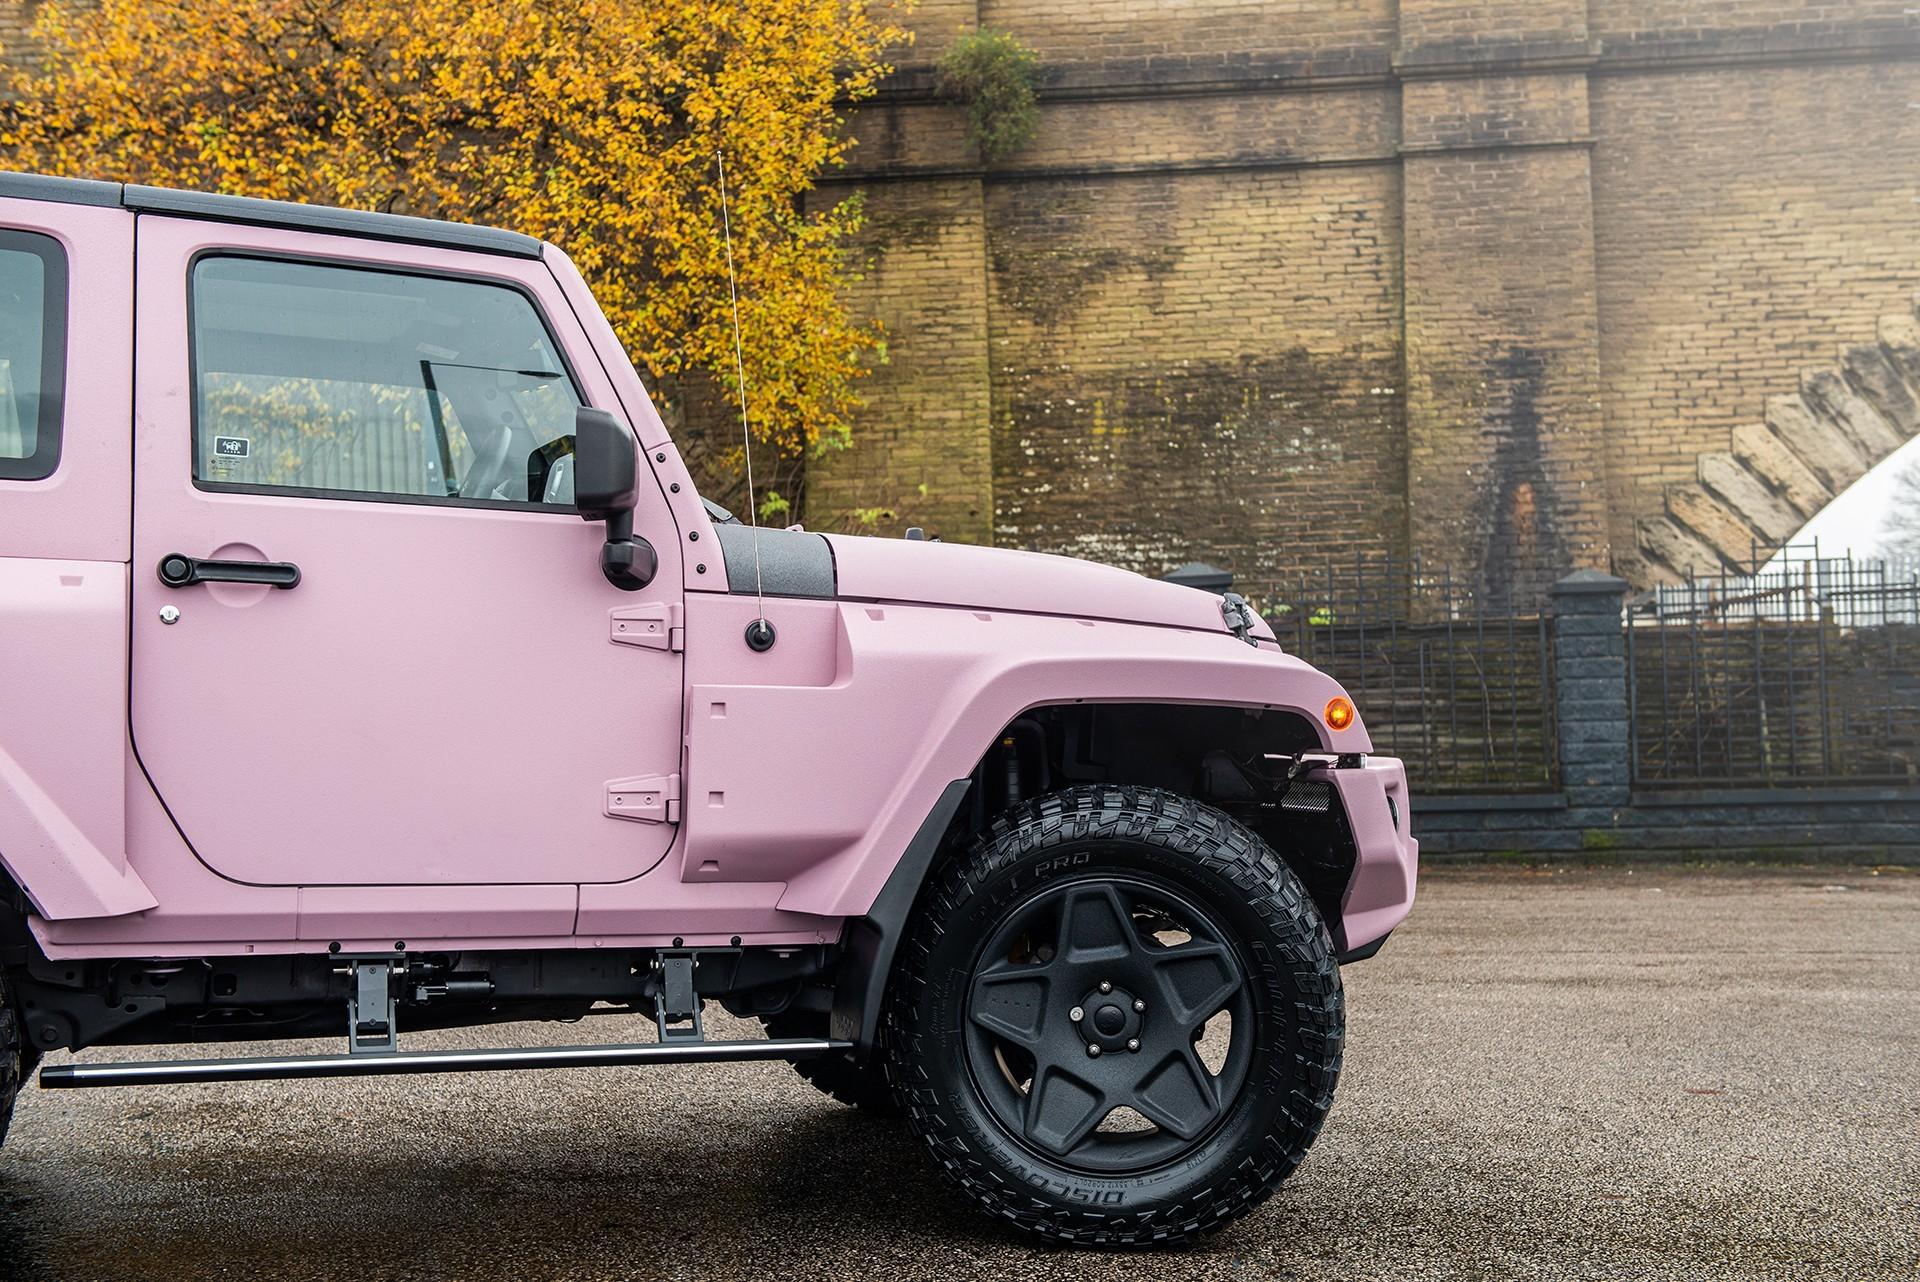 ให้มันเป็นสีชมพู! Pink Jeep Wrangler RHD จากฝีมือการรังสรรค์ของ Kahn Design